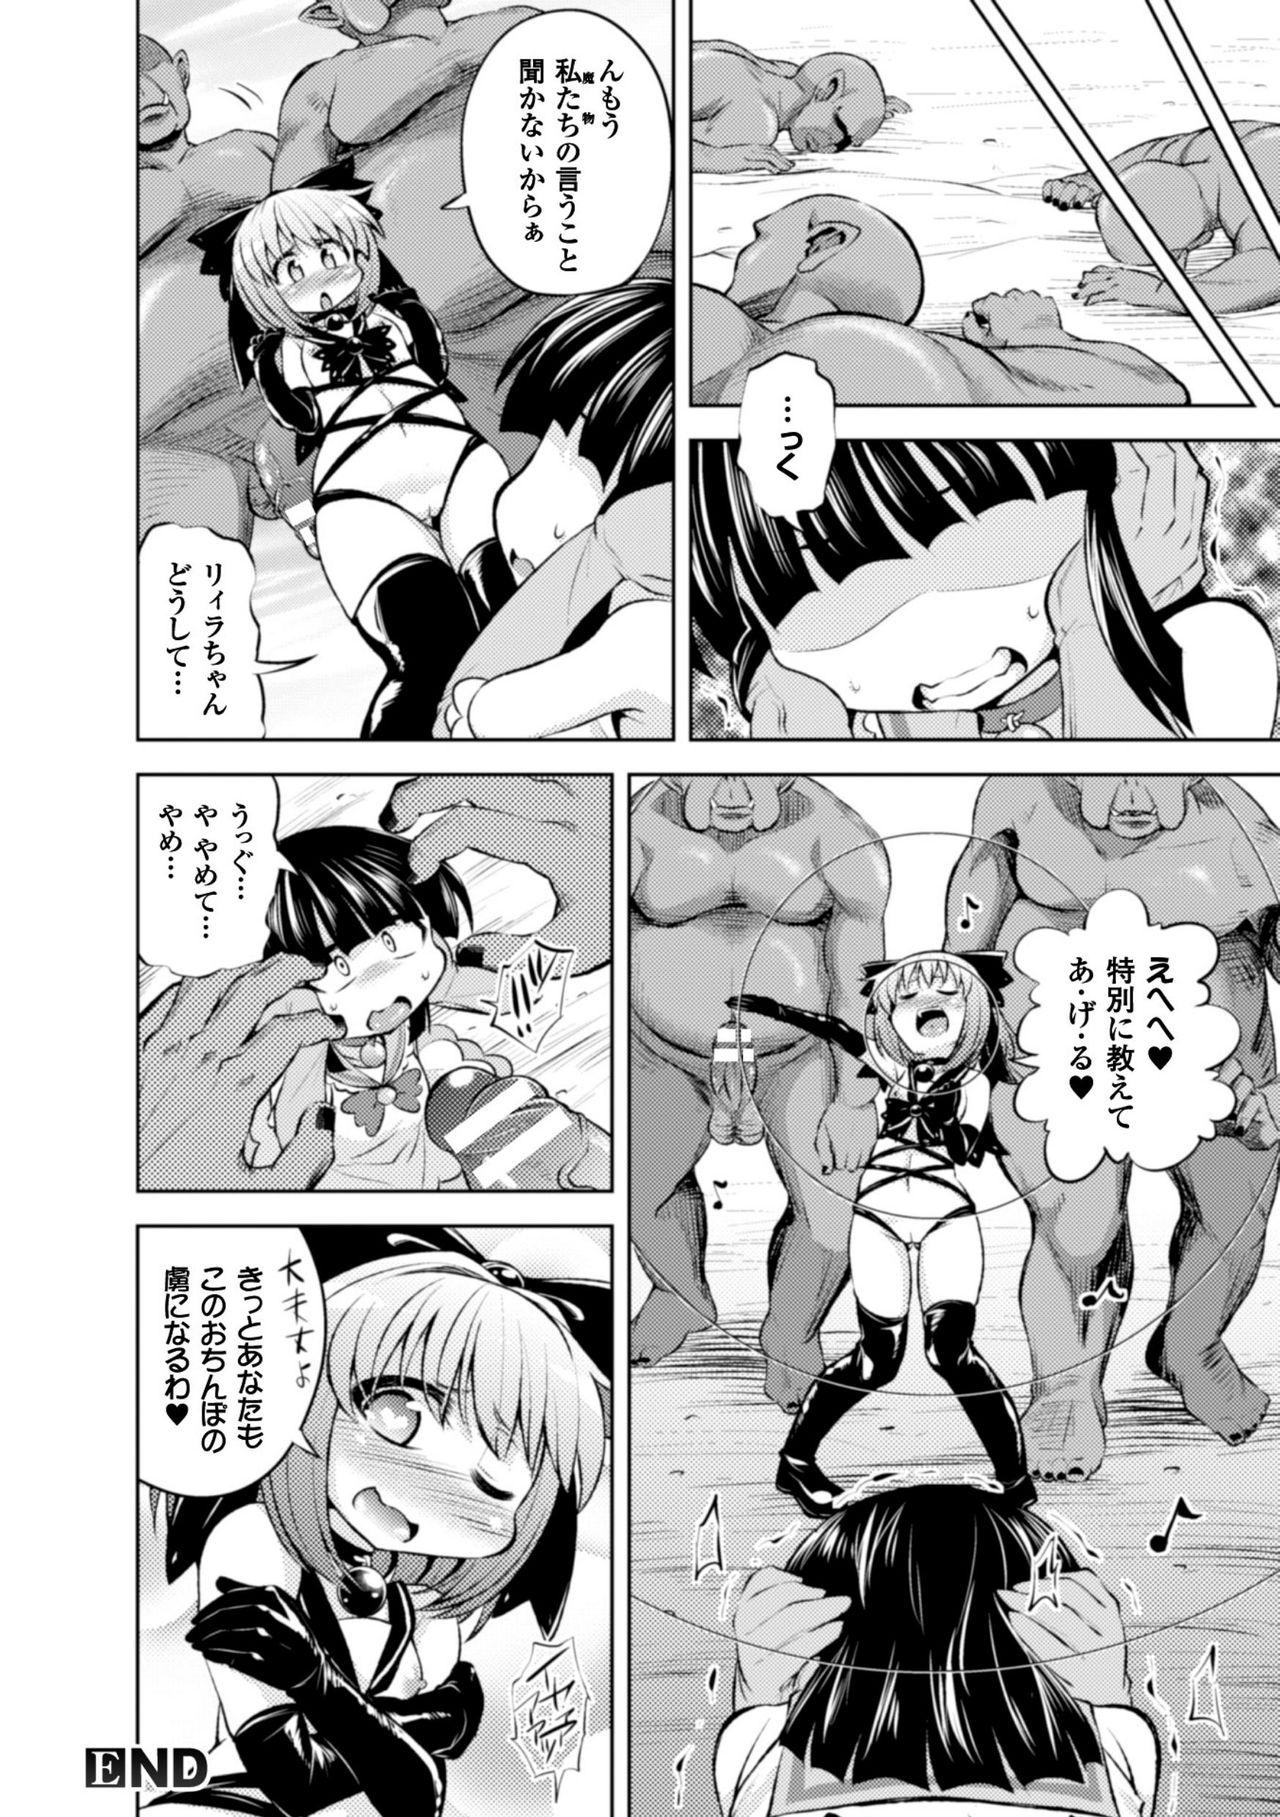 Seigi no Heroine Kangoku File Vol. 8 35